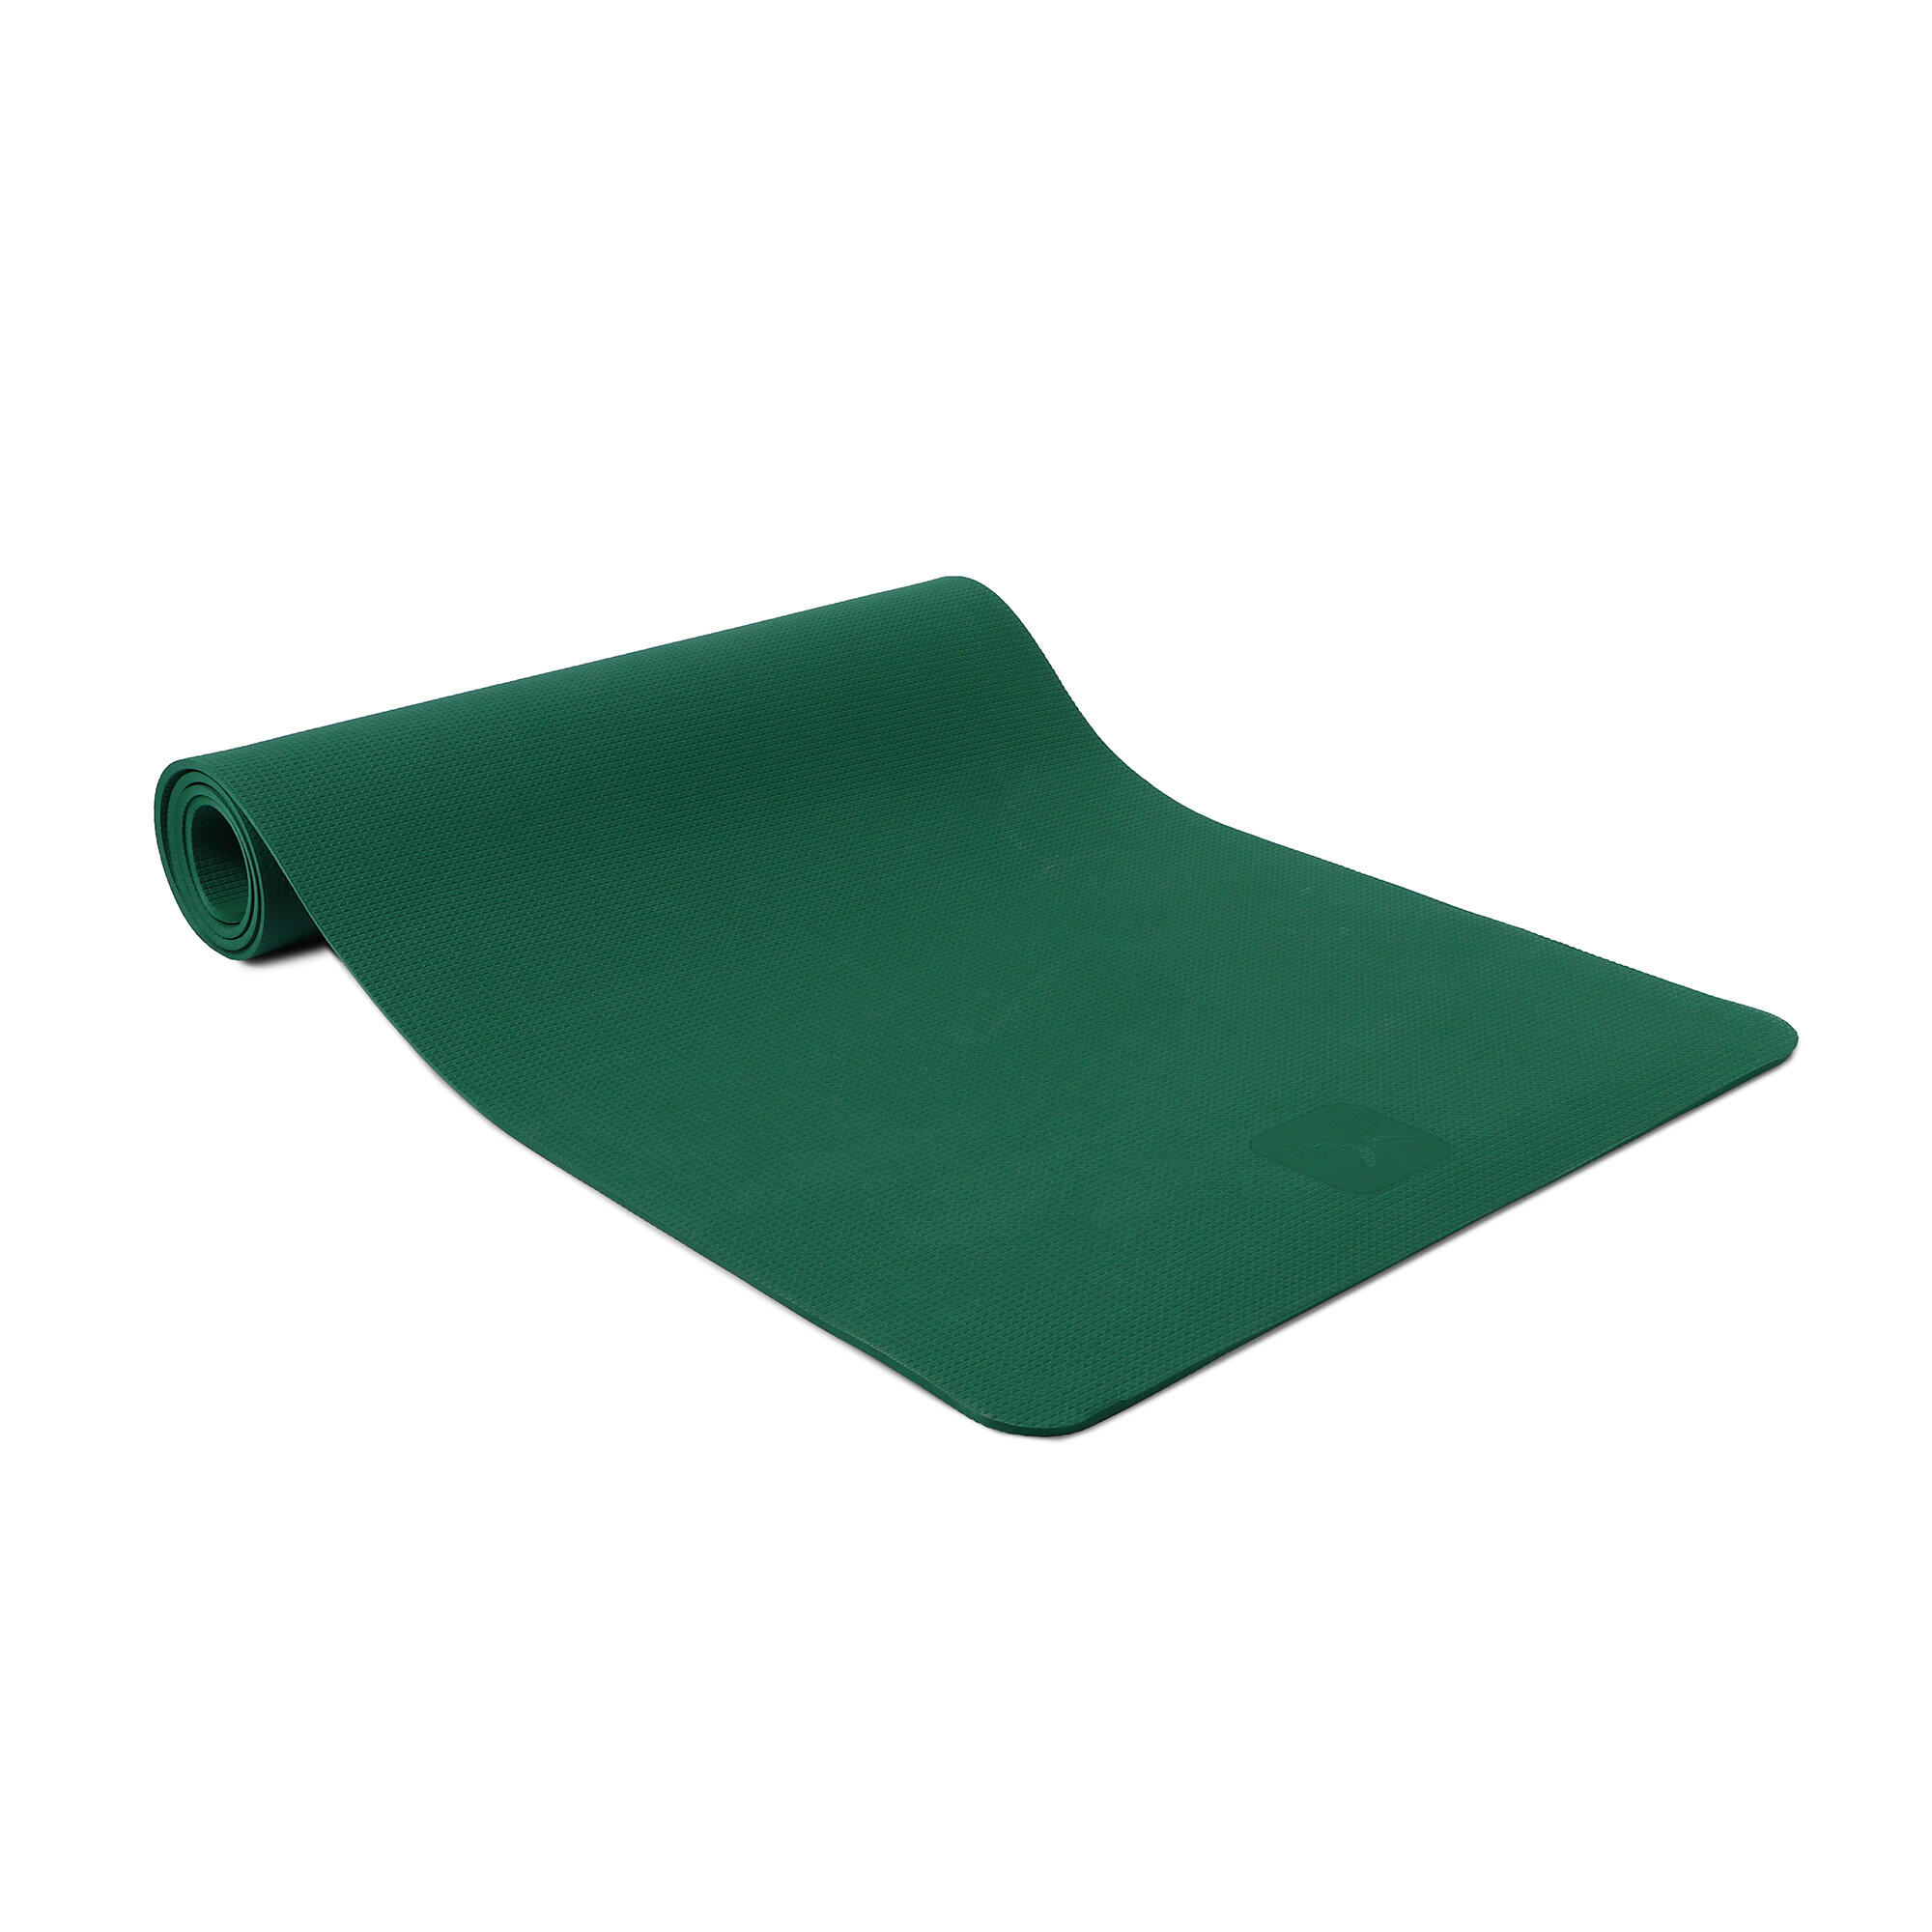 Buy Gentle Yoga Mat 6 mm Online, Green